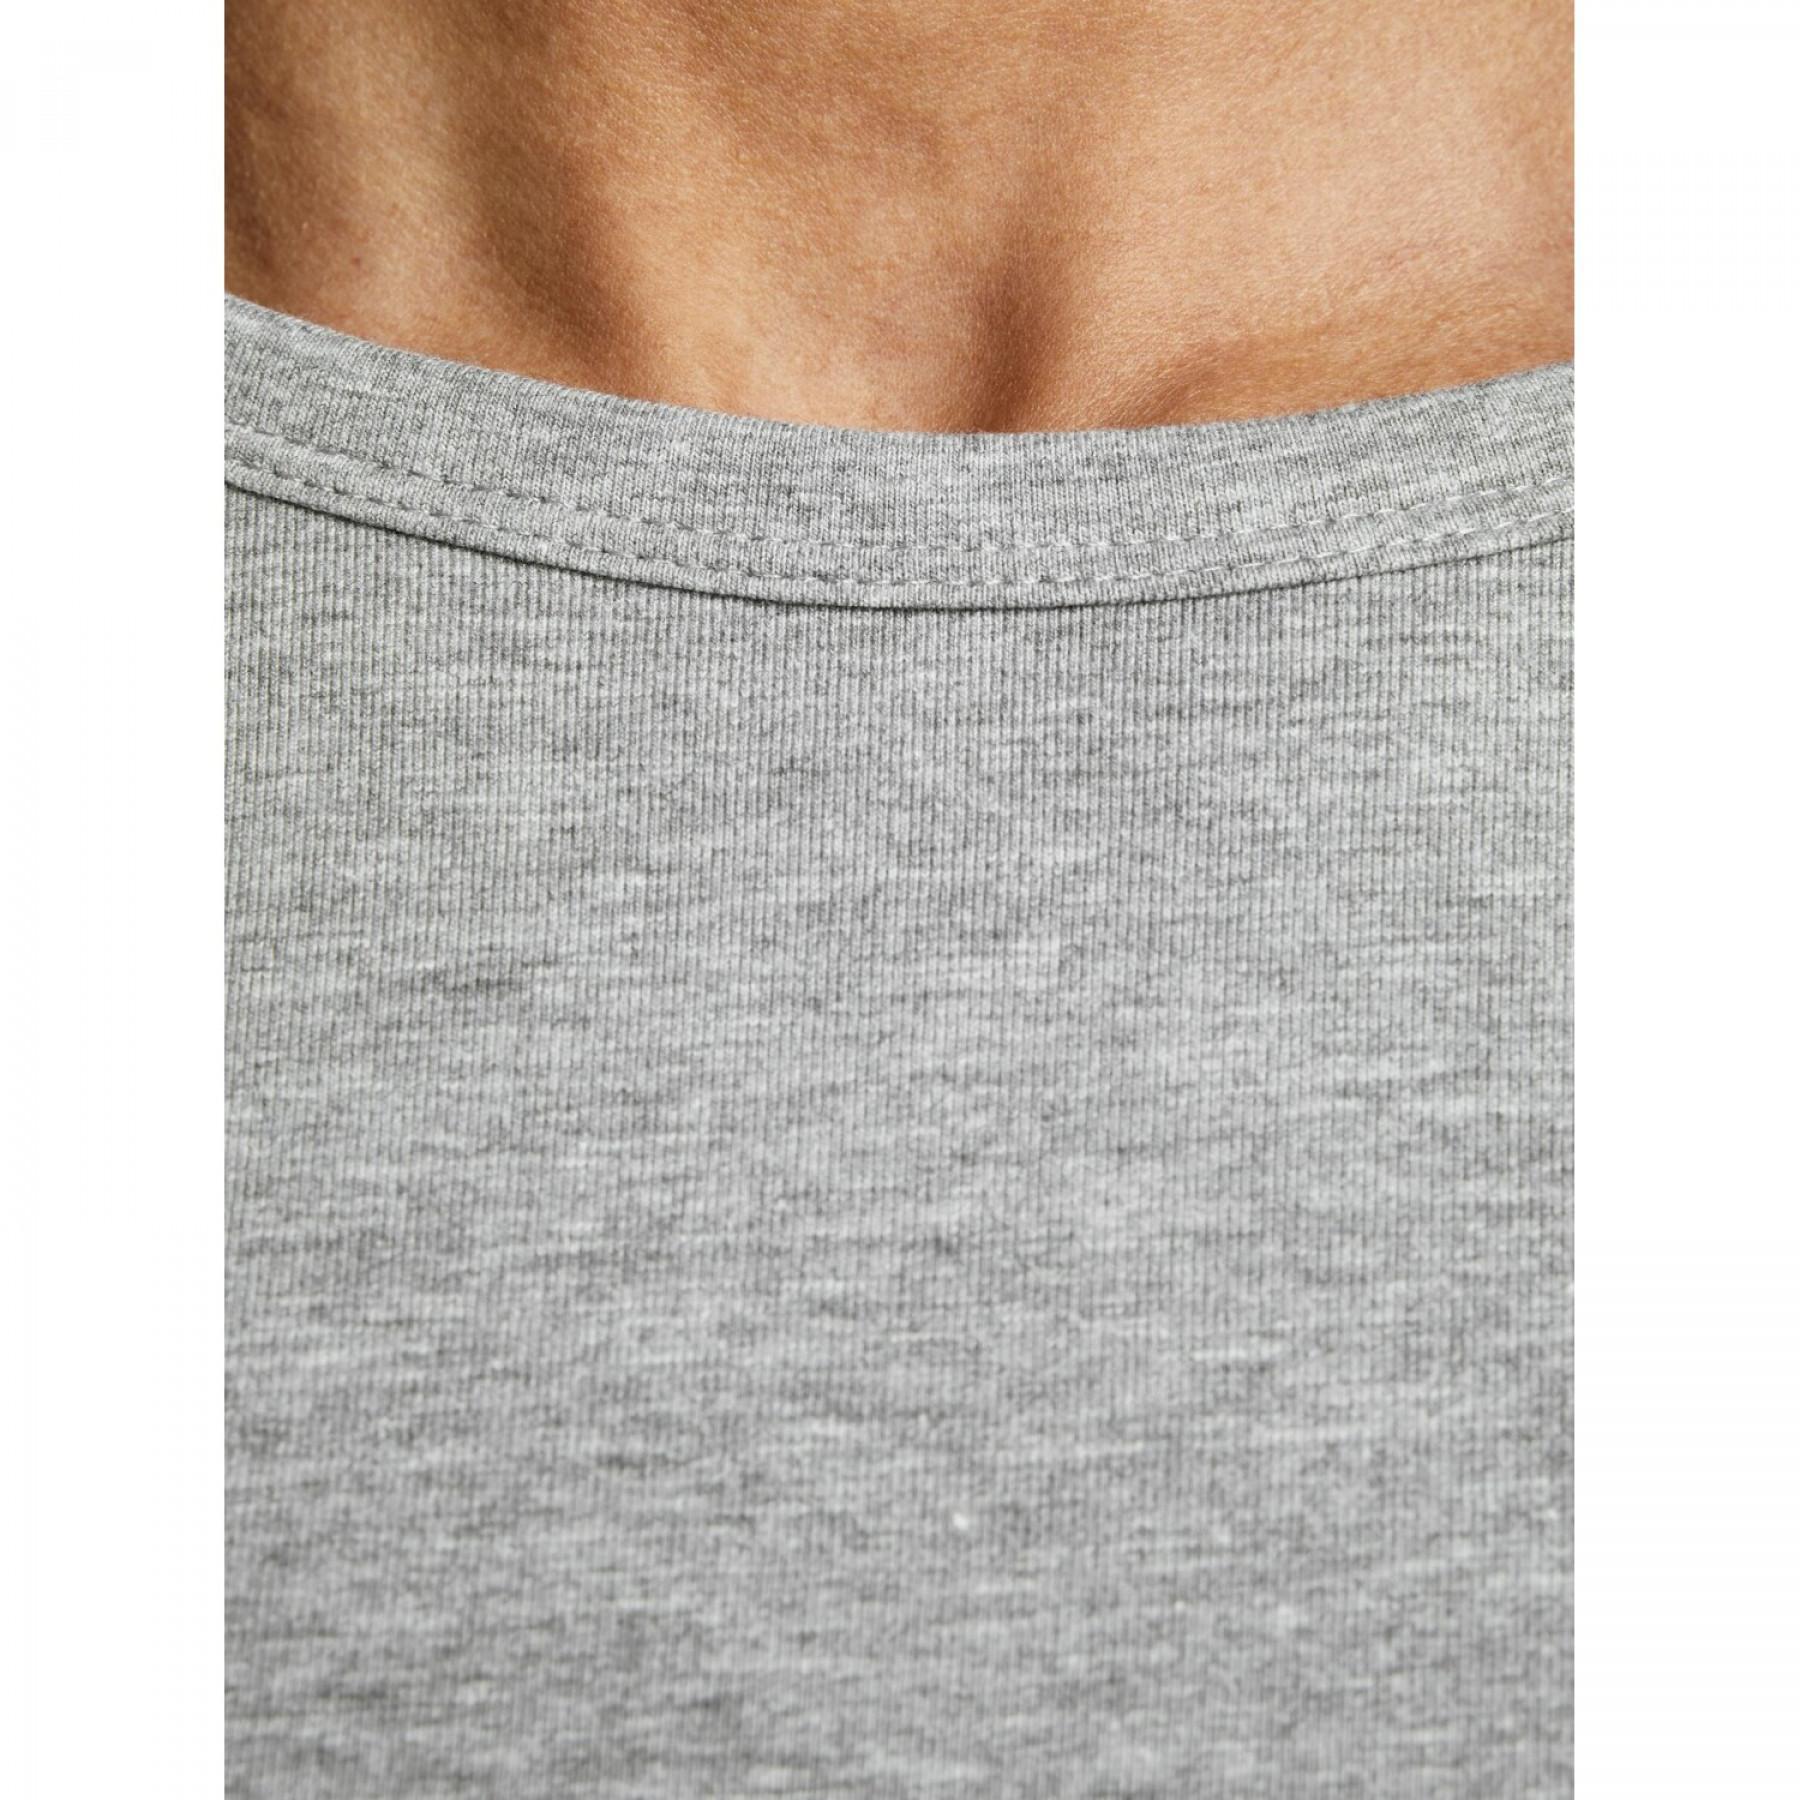 Langarm-T-Shirt Jack & Jones Basic o-neck